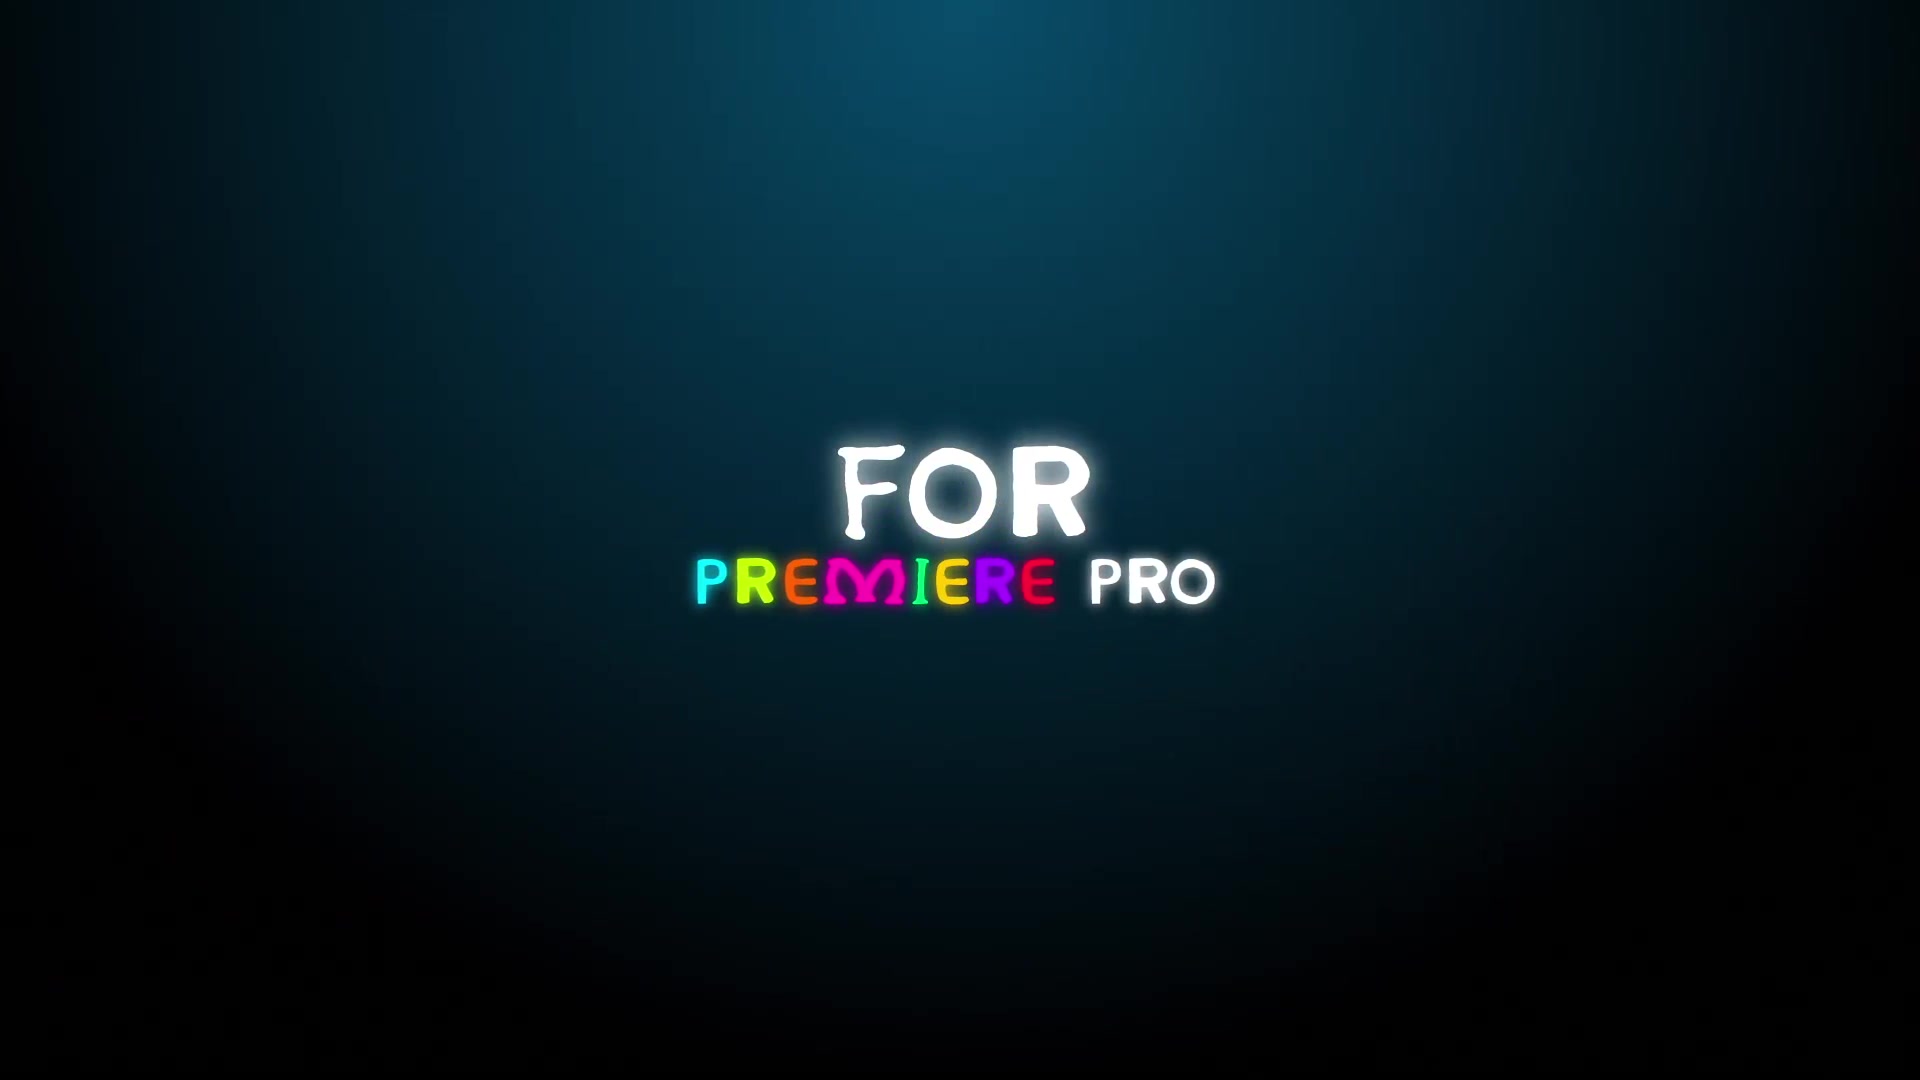 500 Premiere Pro Title Videohive 32487003 Premiere Pro Image 13